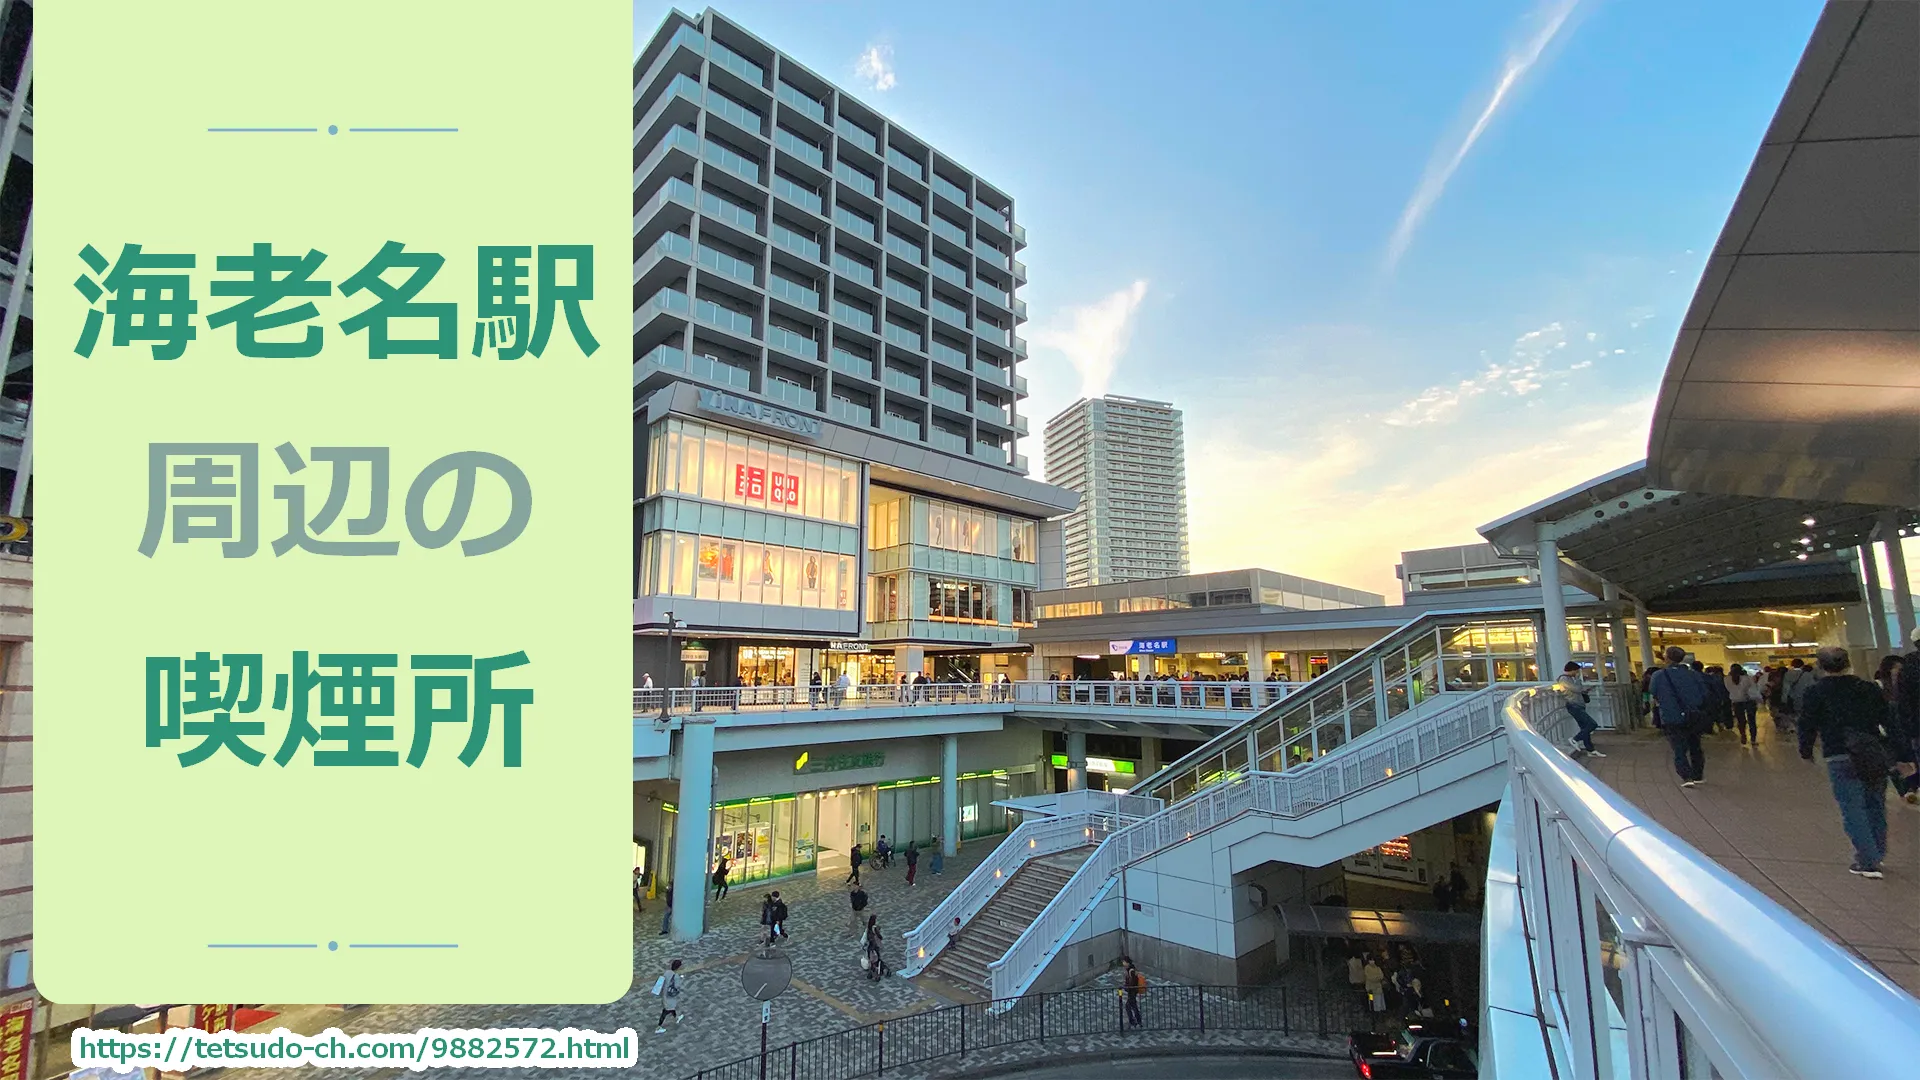 【2022年10月版】海老名駅周辺の喫煙所を紹介